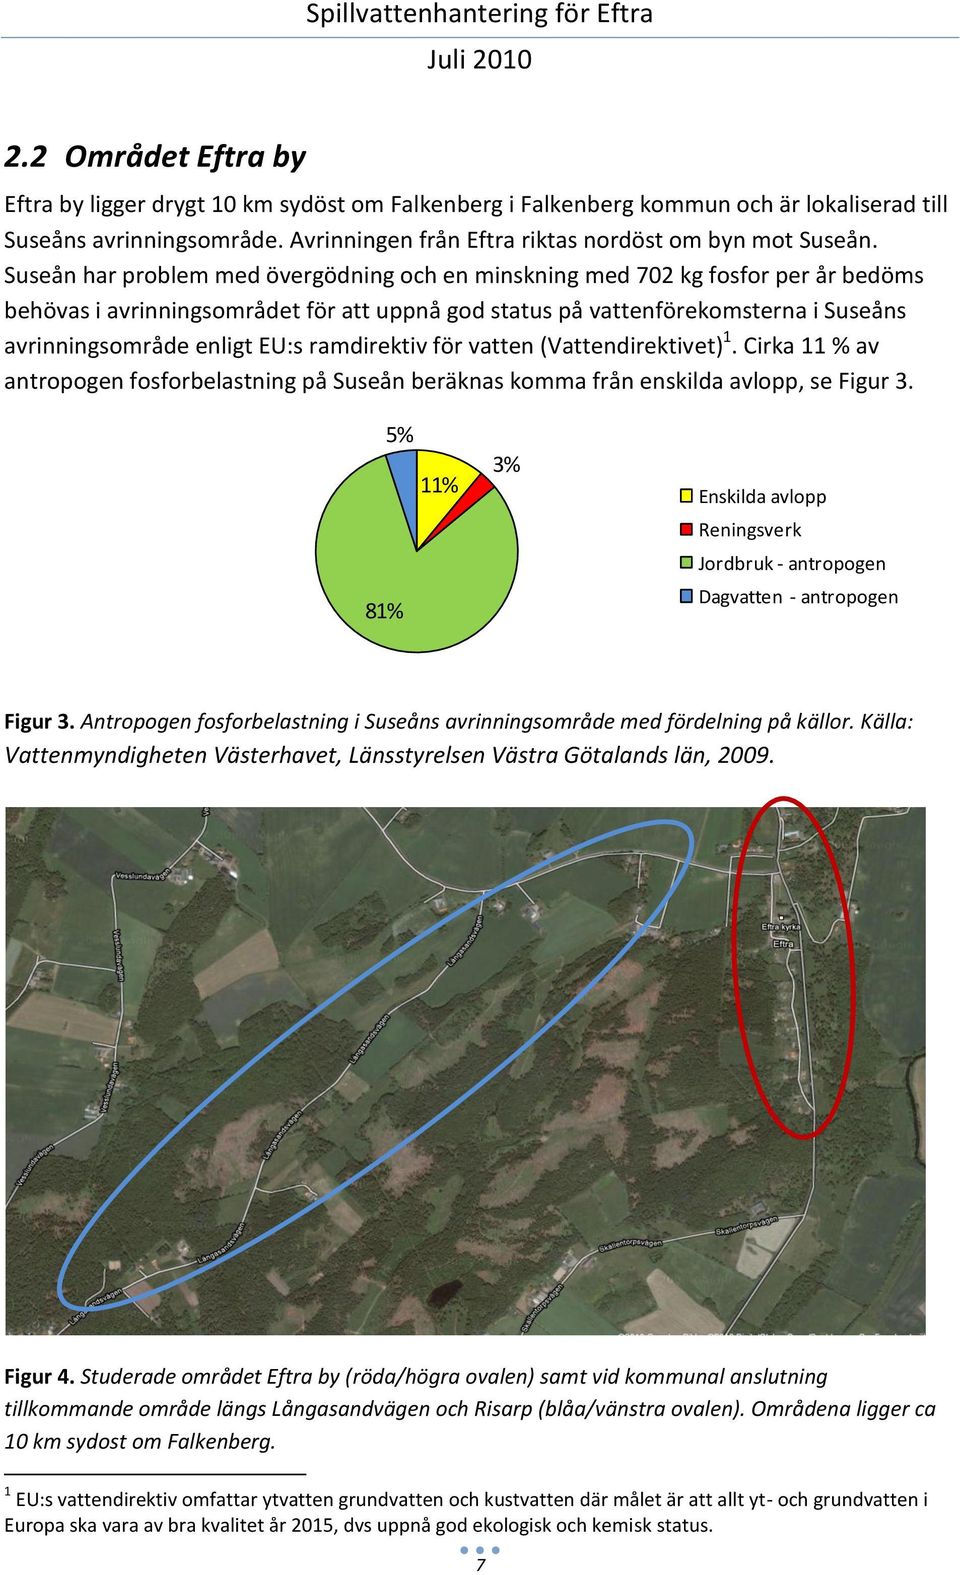 ramdirektiv Antropogen för vatten fosforbelastning (Vattendirektivet) Suseån 1. Cirka 11 % av antropogen fosforbelastning på Suseån beräknas komma från enskilda avlopp, se Figur 3.